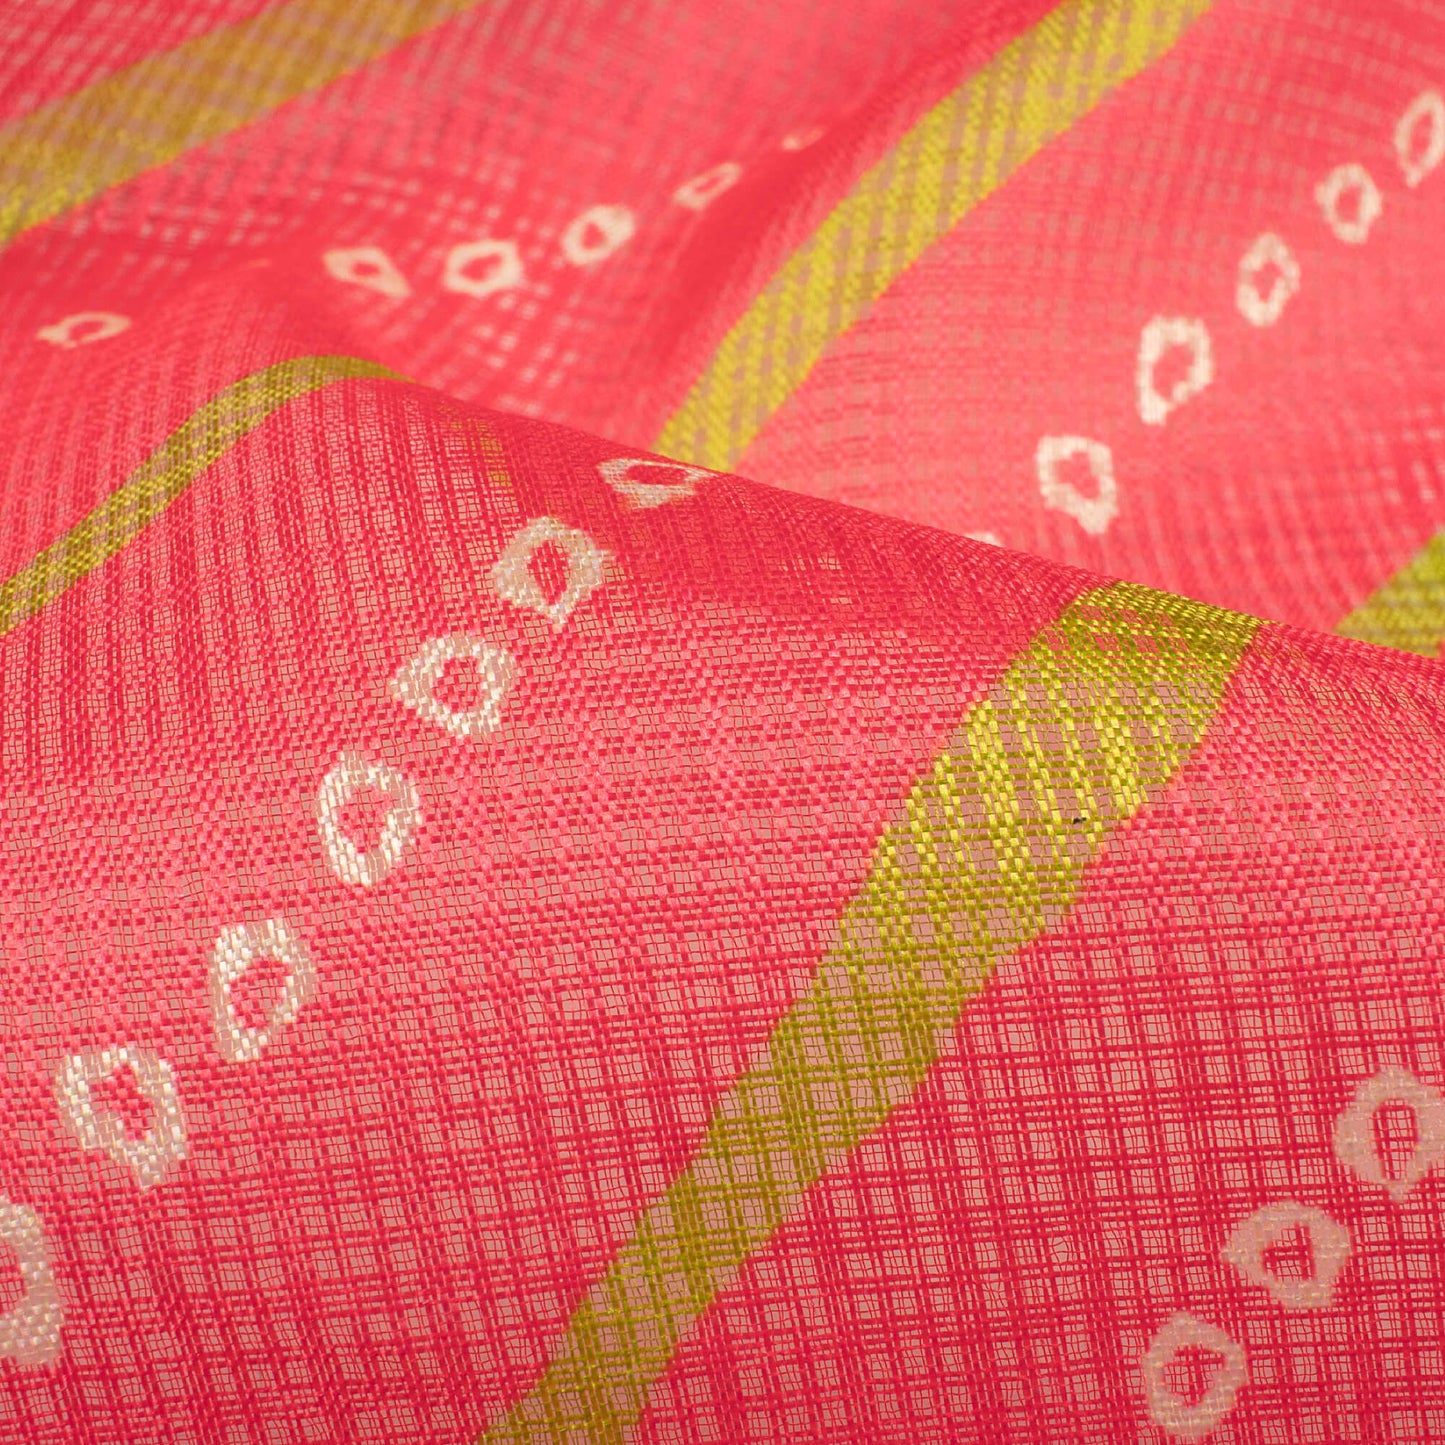 Persian Red And Pear Green Bandhani Pattern Digital Print Kota Doria Fabric